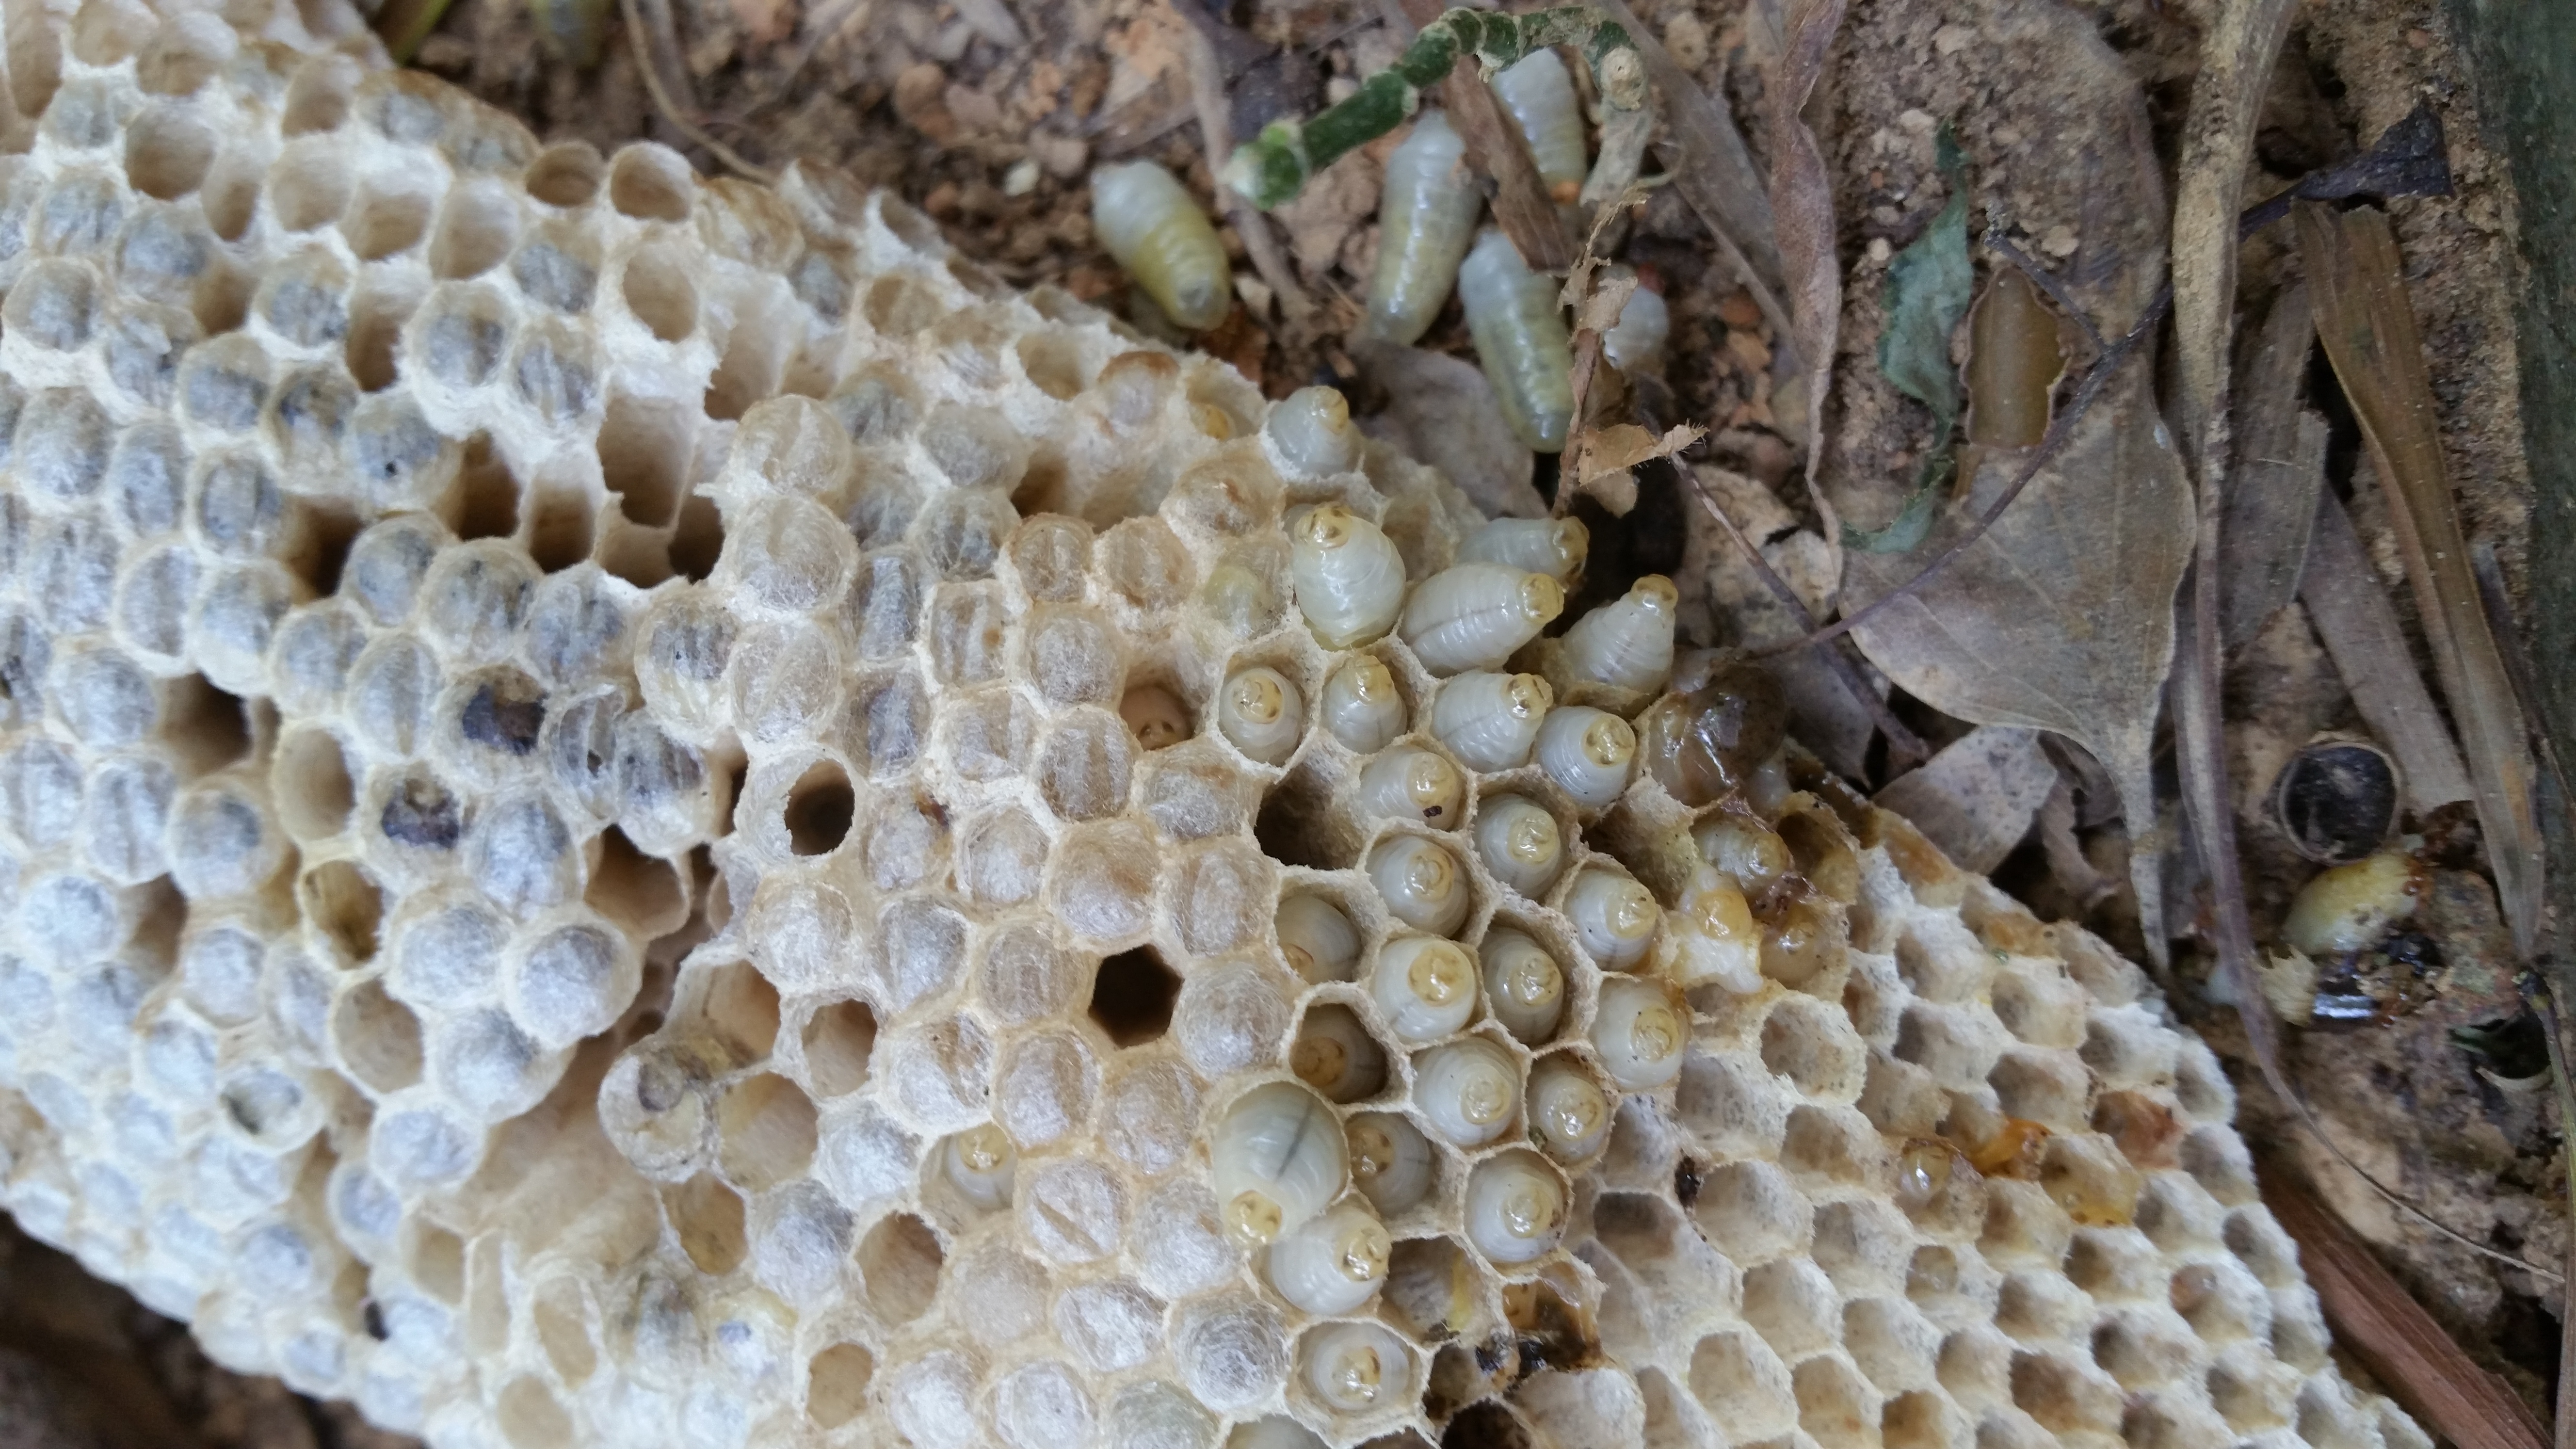 小徑上驚見破碎的蜂巢與蠕動中的蜂蛹